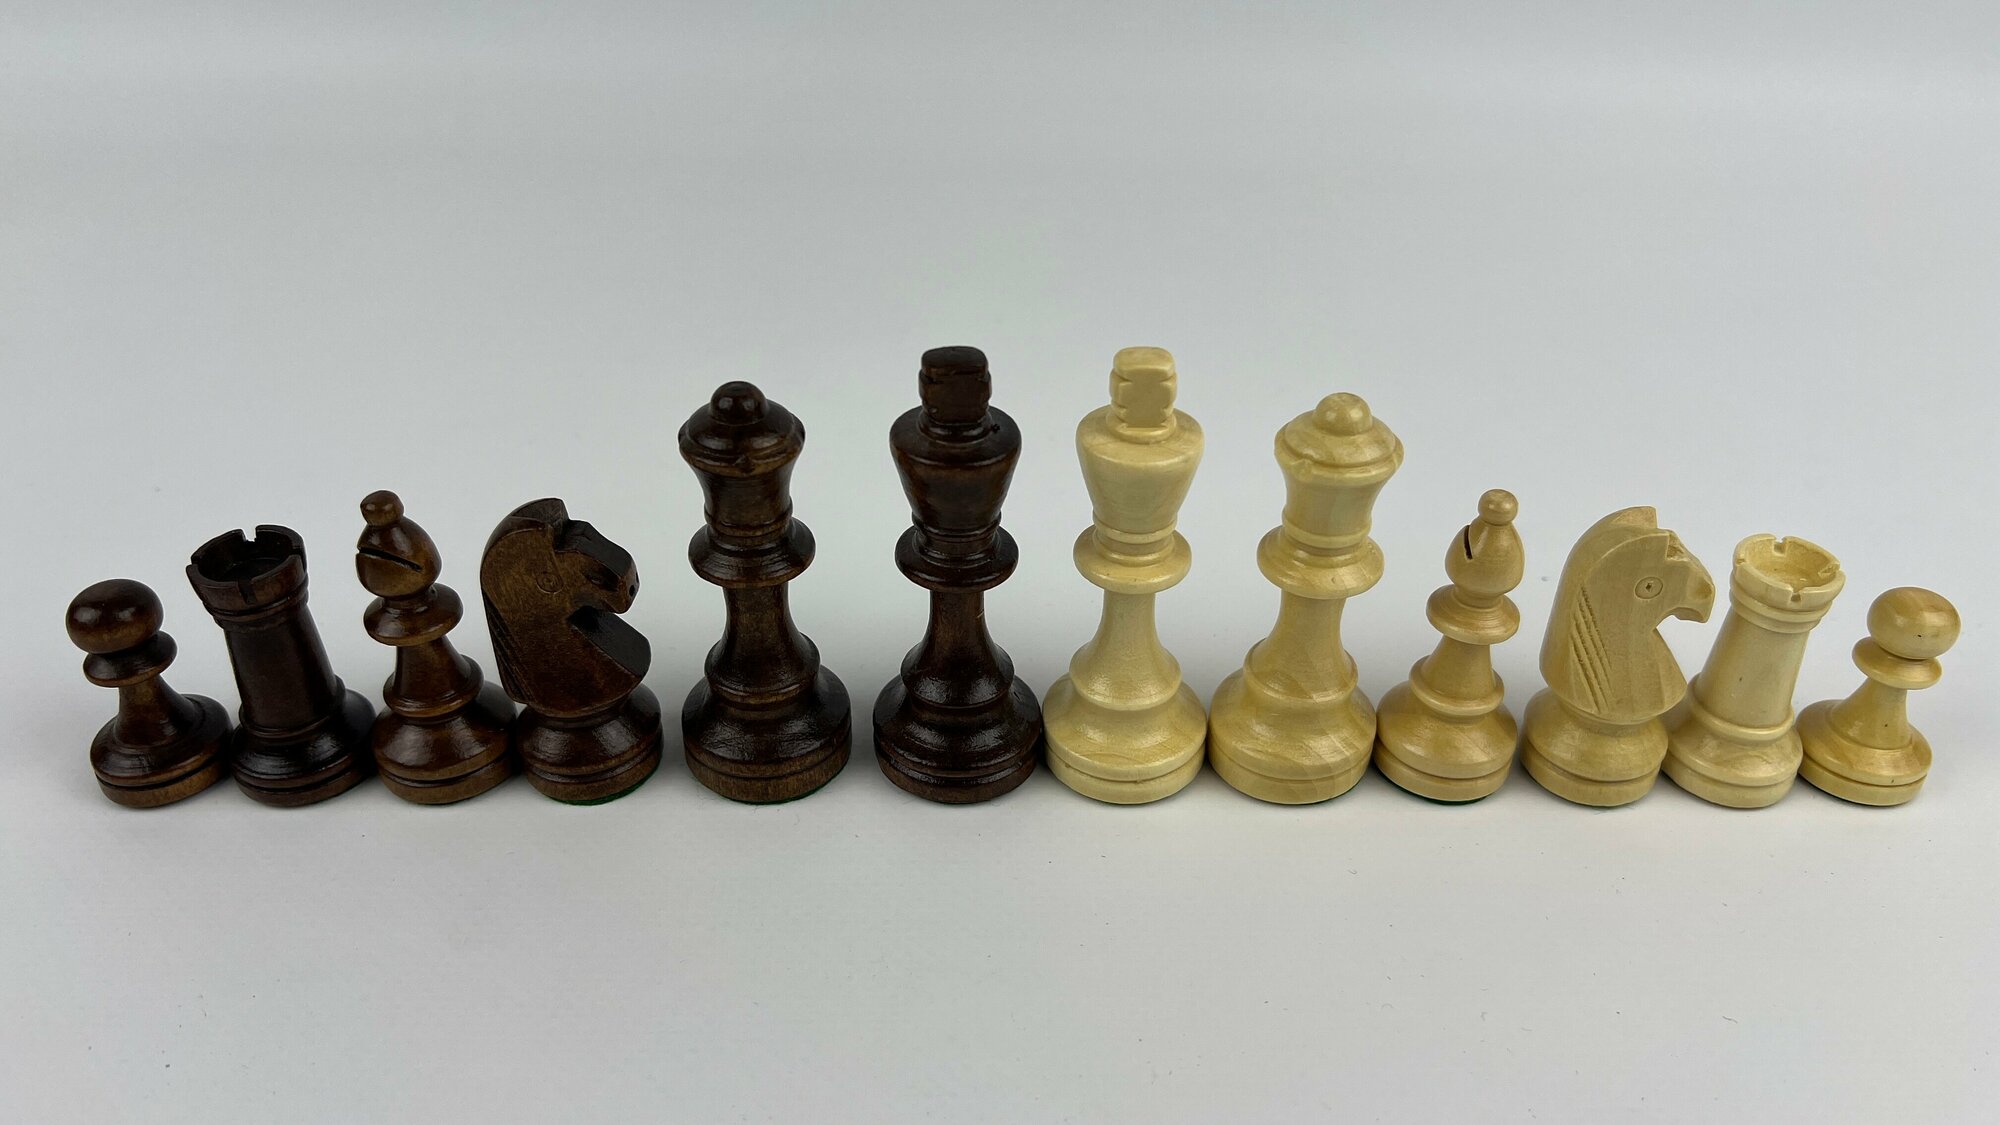 Деревянные шахматные фигуры с утяжелителем Стаунтон 4 в пакете.